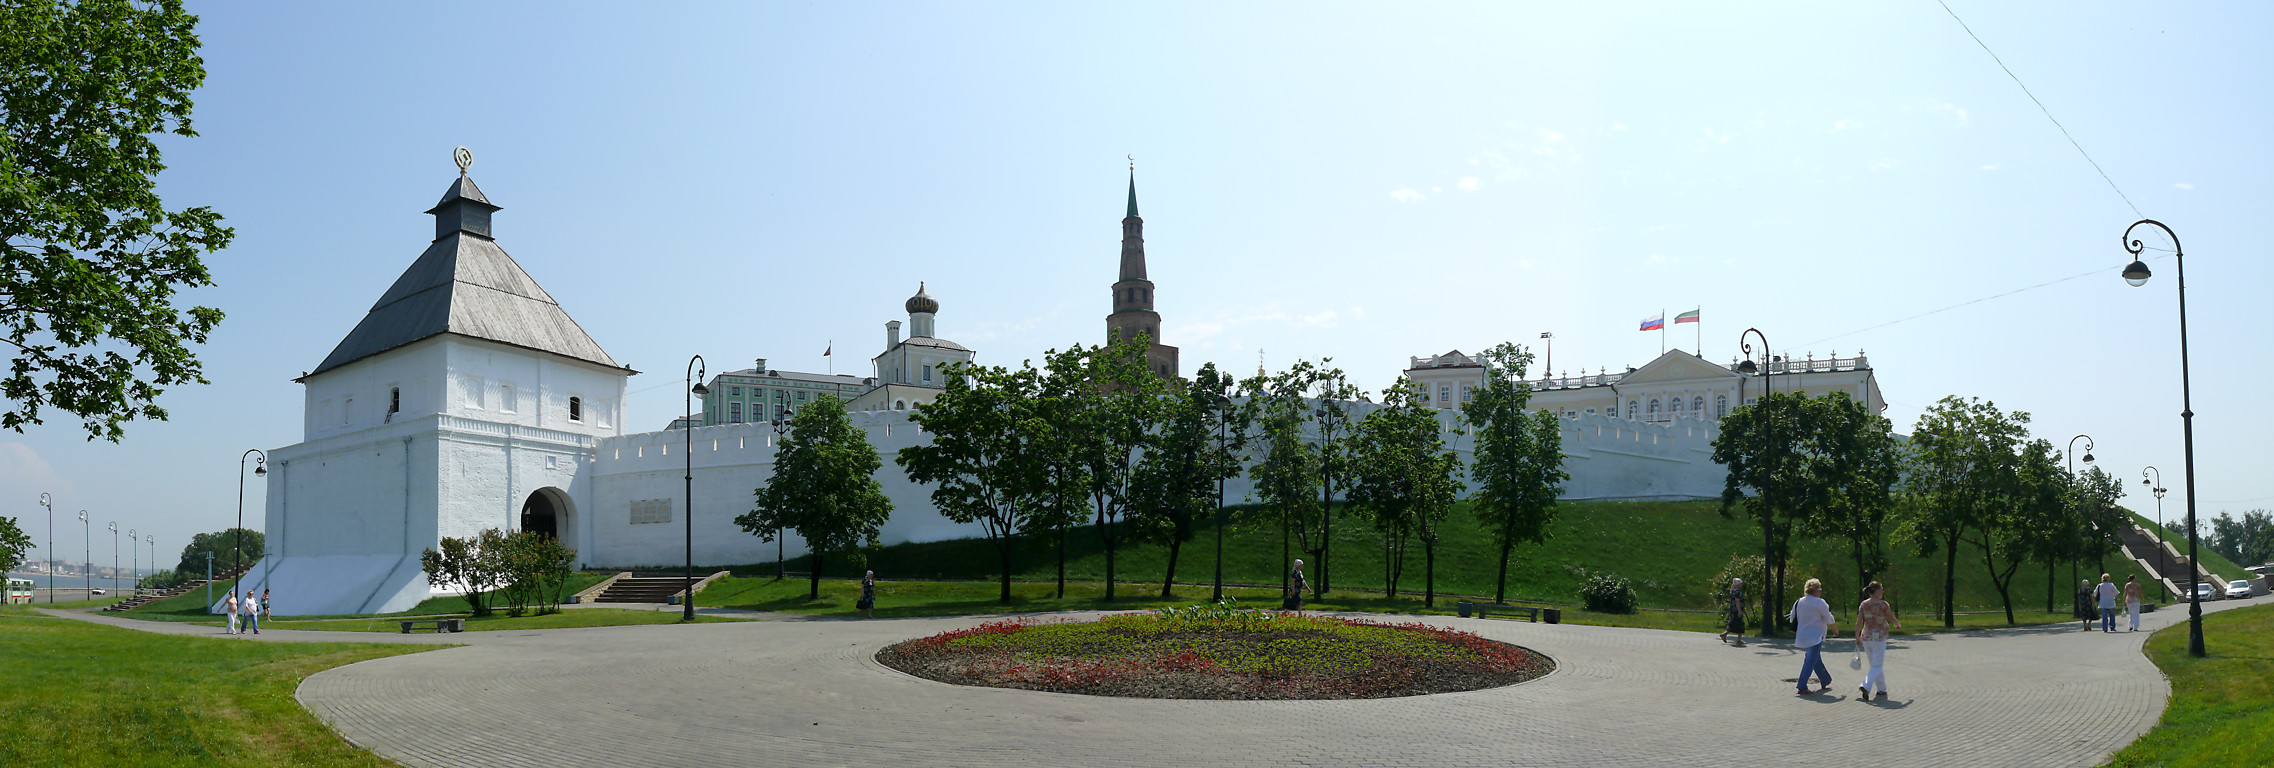 Казань. Кремль. Вид на Тайницкую башню